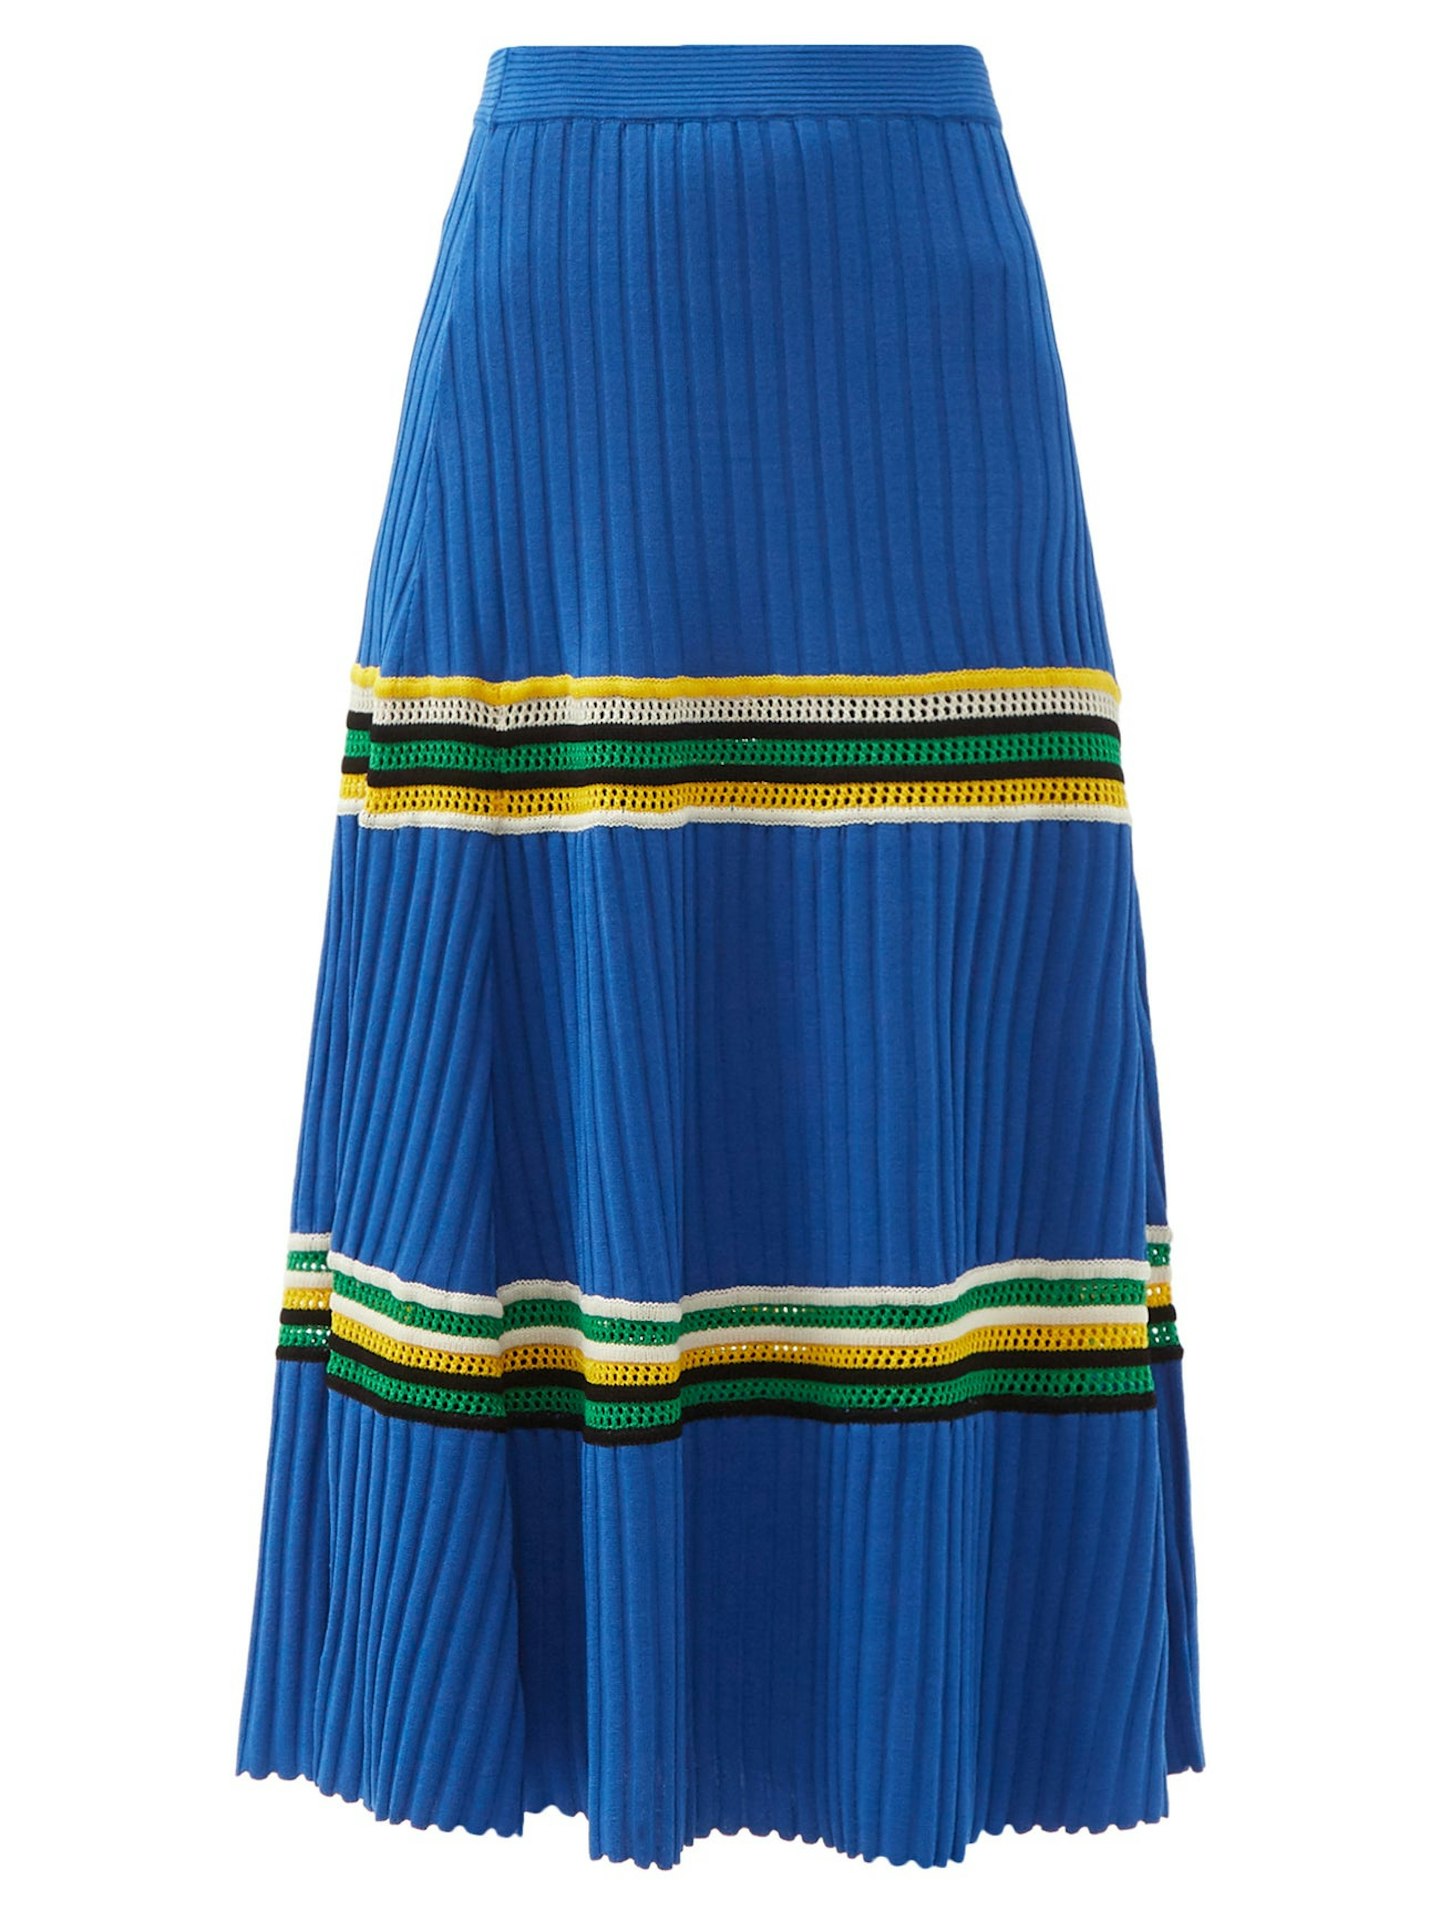 Wales Bonner, Saint Ann Crochet-Panel Rib-Knitted Skirt, £450